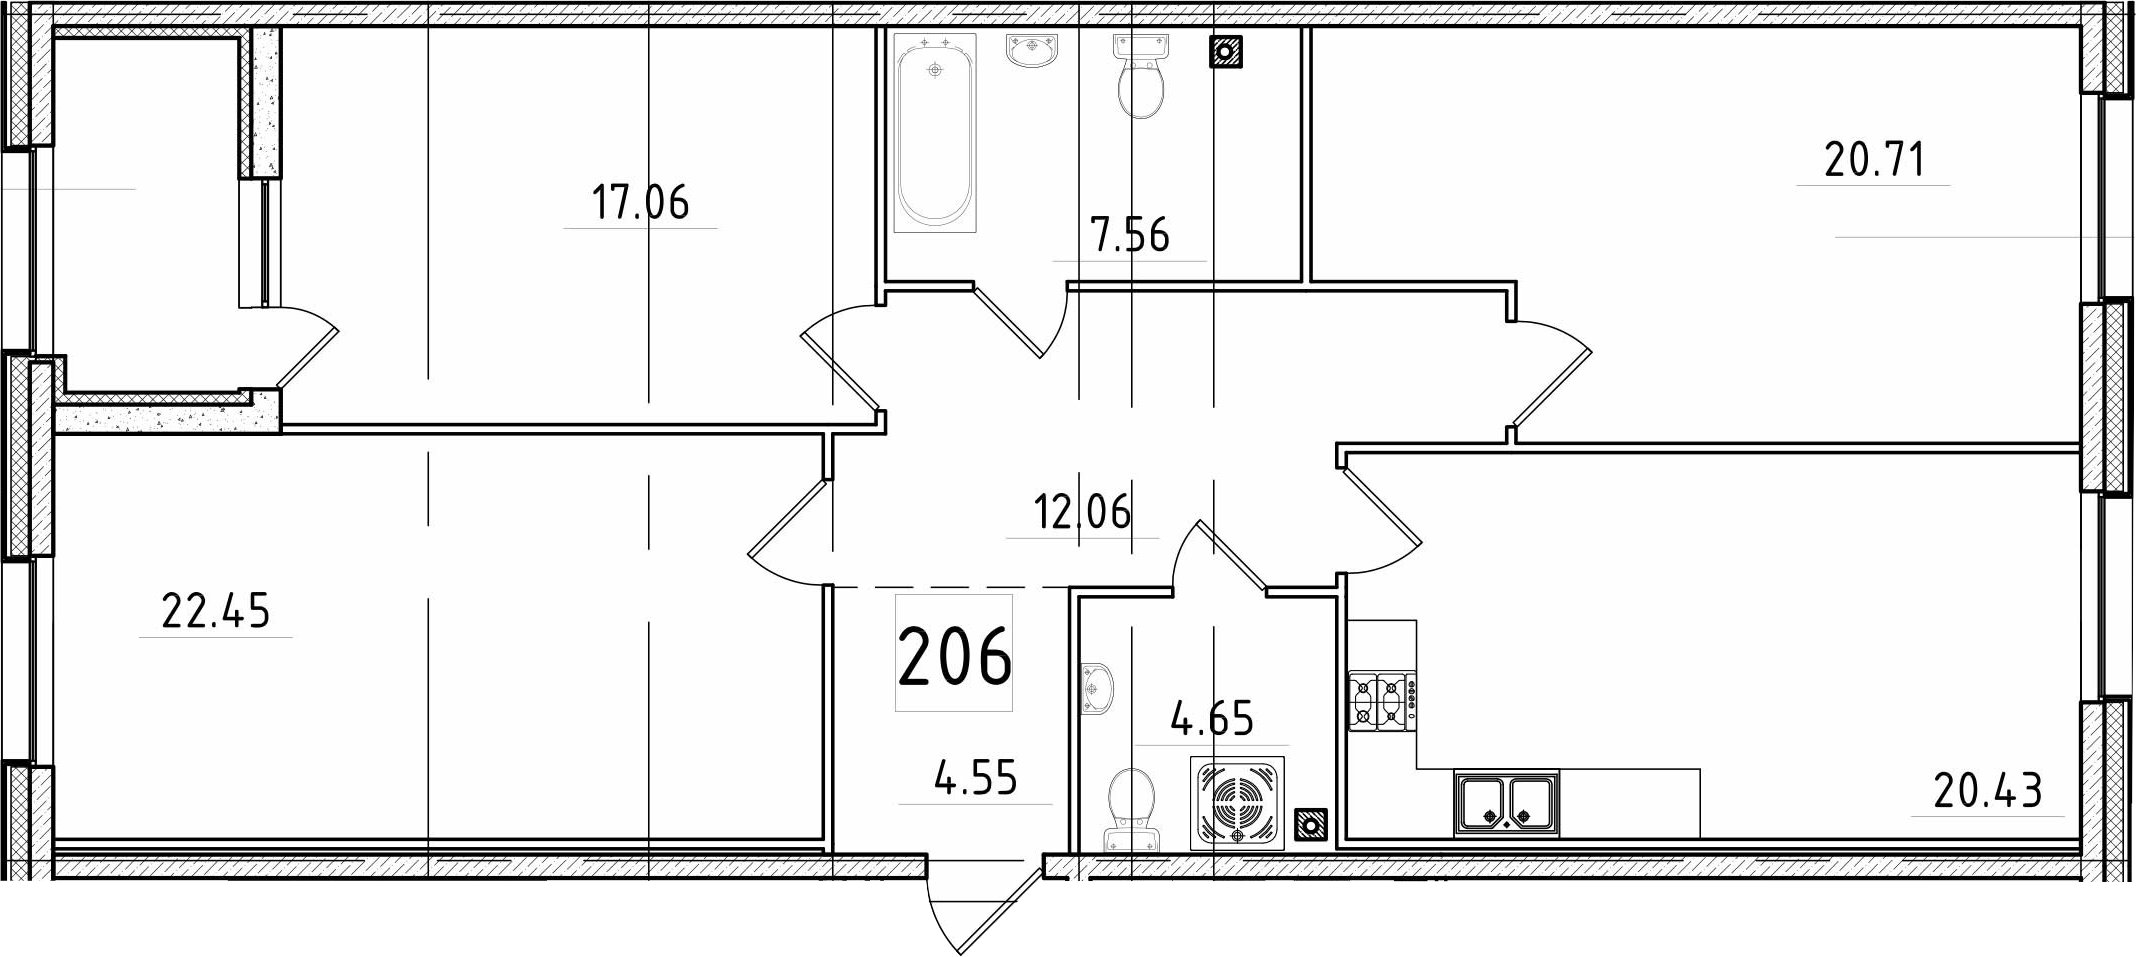 4-комнатная 110 м<sup>2</sup> на 2 этаже